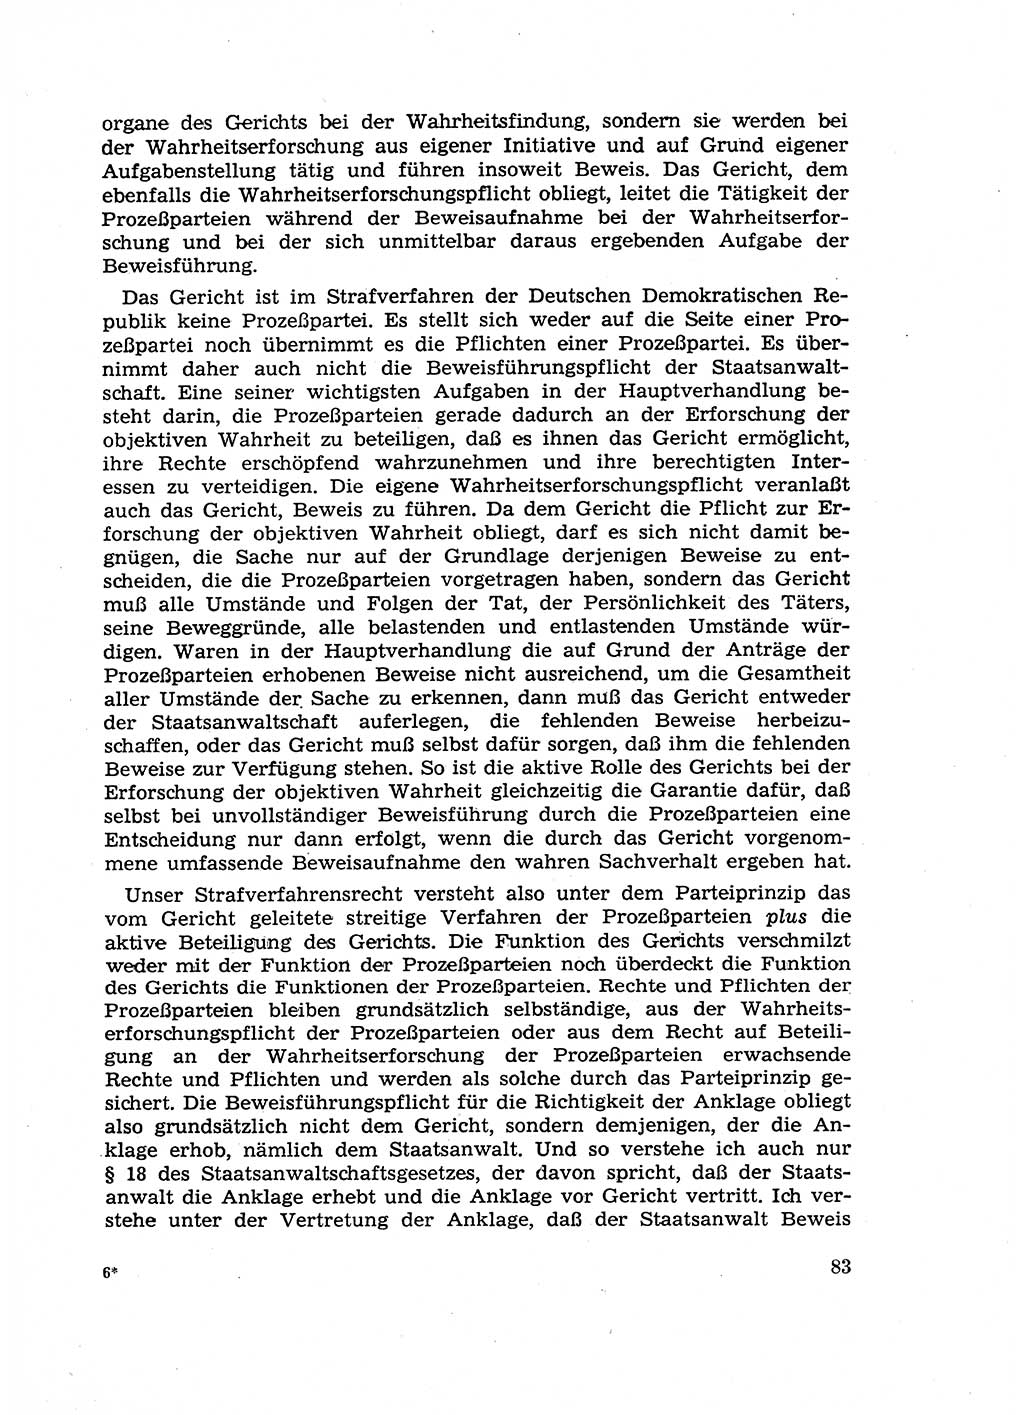 Fragen des Beweisrechts im Strafprozess [Deutsche Demokratische Republik (DDR)] 1956, Seite 83 (Fr. BeweisR. Str.-Proz. DDR 1956, S. 83)